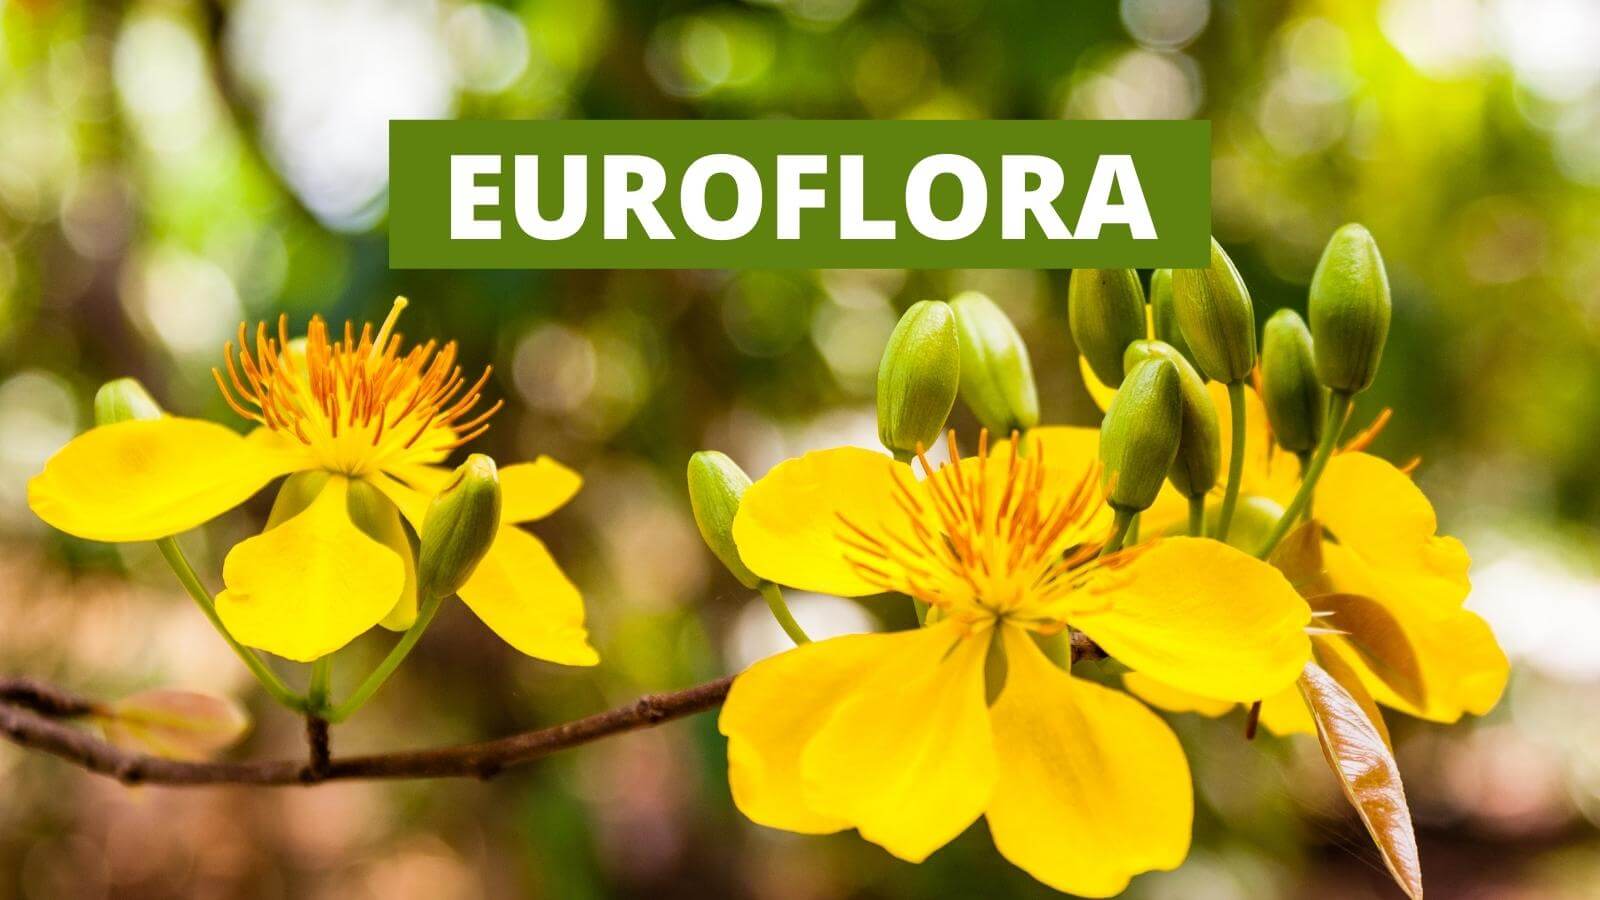 Euroflora - Mostra Internazionale del Fiore e delle Piante Ornamentali